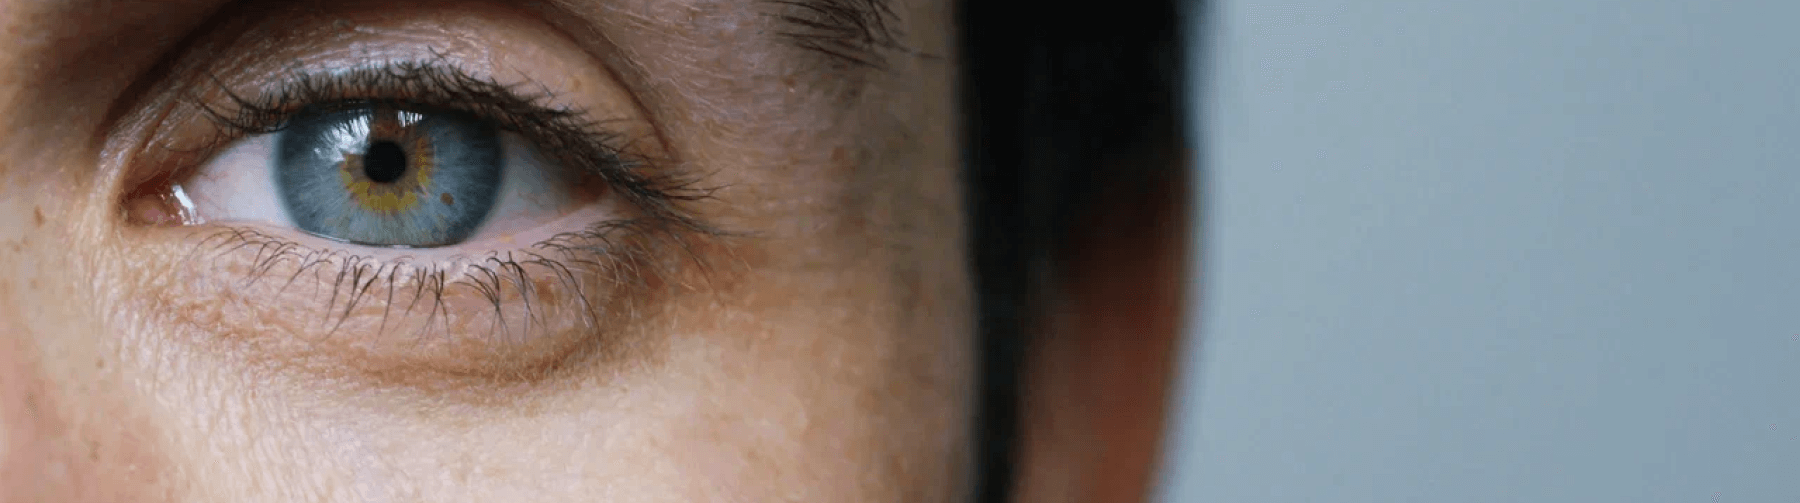 Почему дергается глаз: причины возникновения тика глаза, профилактика и лечение